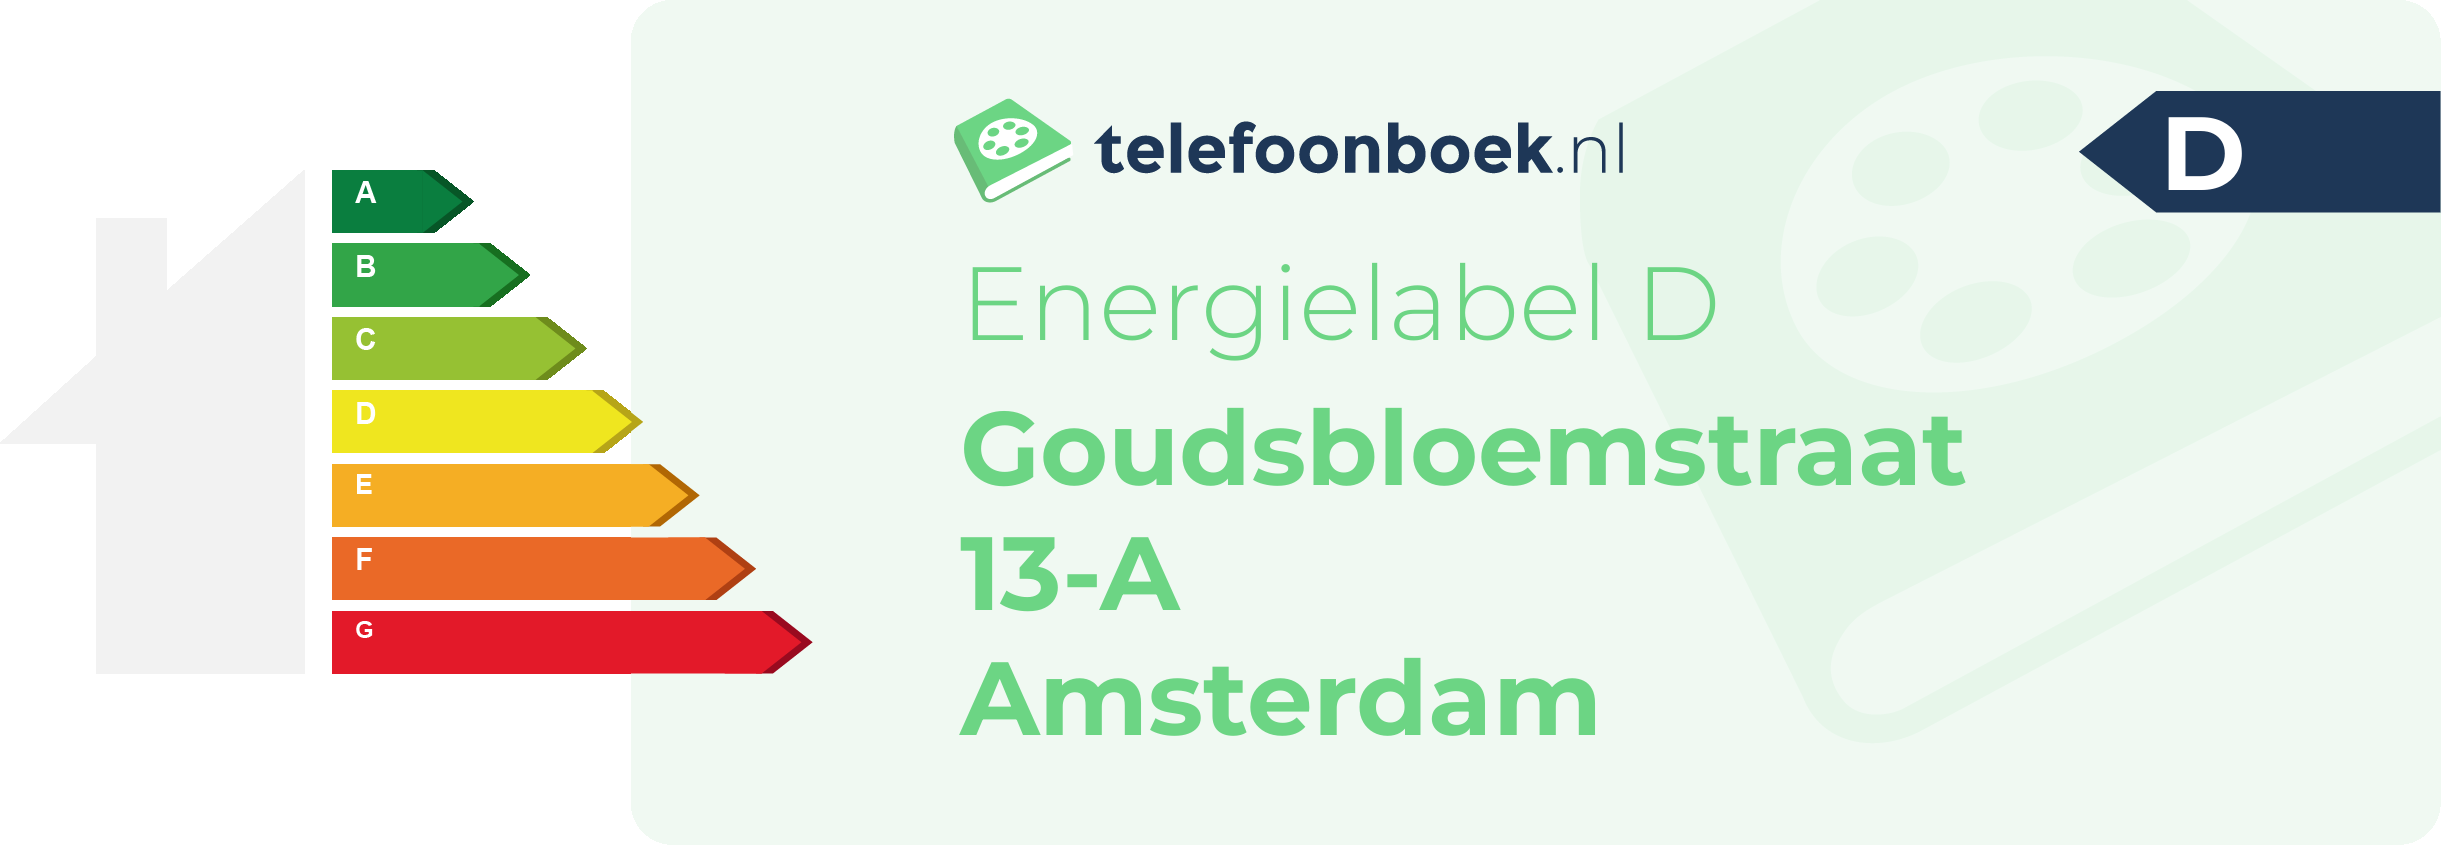 Energielabel Goudsbloemstraat 13-A Amsterdam